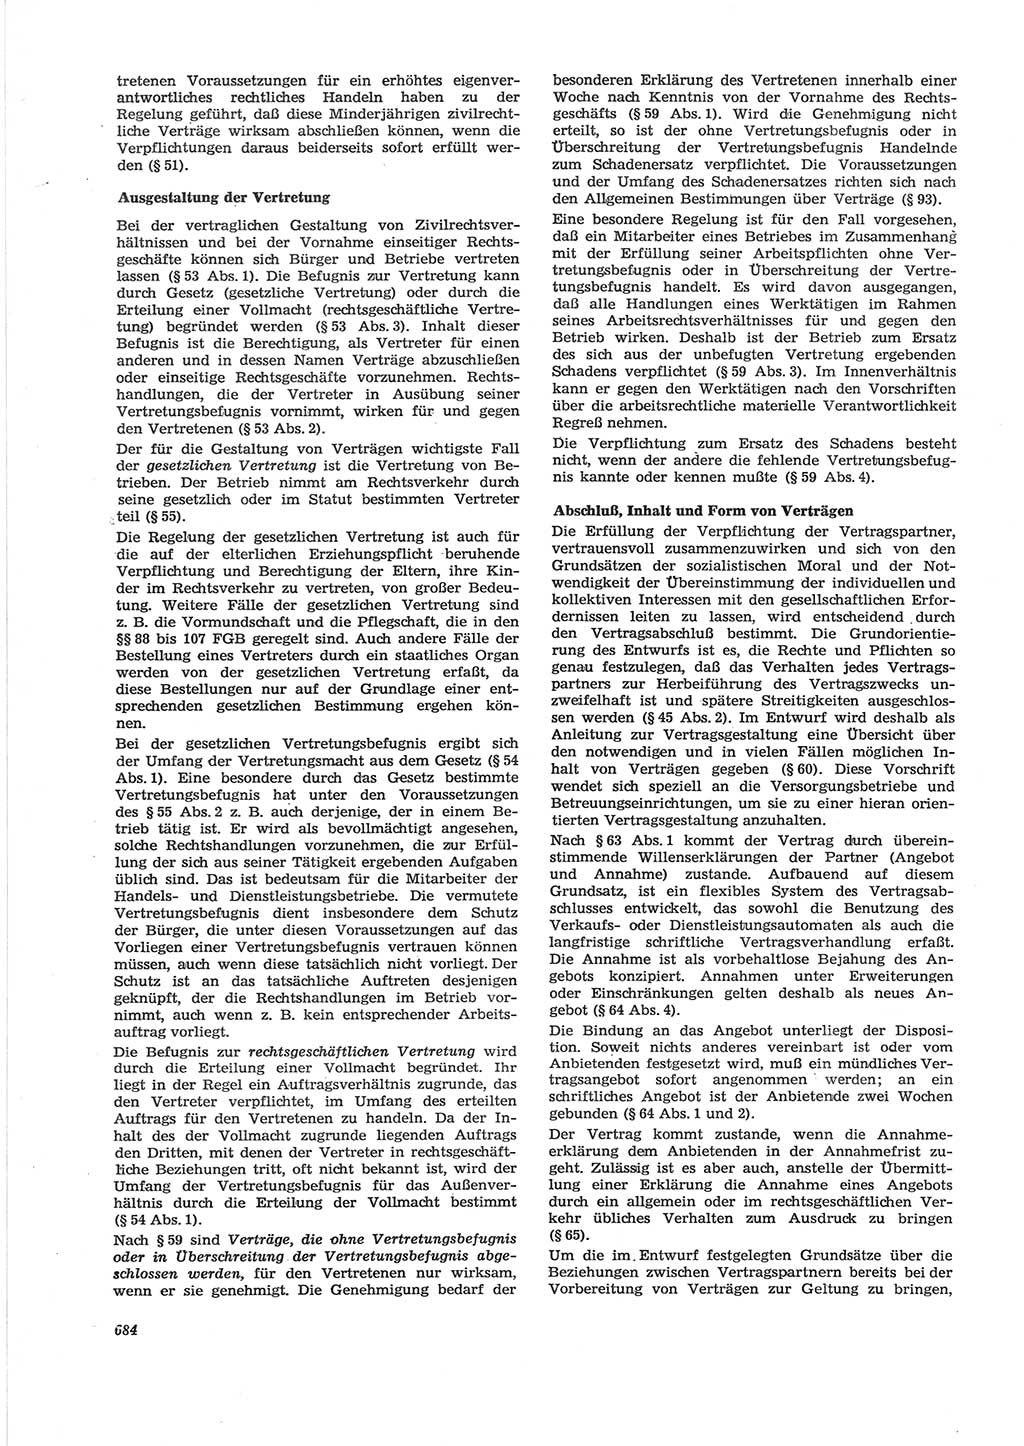 Neue Justiz (NJ), Zeitschrift für Recht und Rechtswissenschaft [Deutsche Demokratische Republik (DDR)], 28. Jahrgang 1974, Seite 684 (NJ DDR 1974, S. 684)